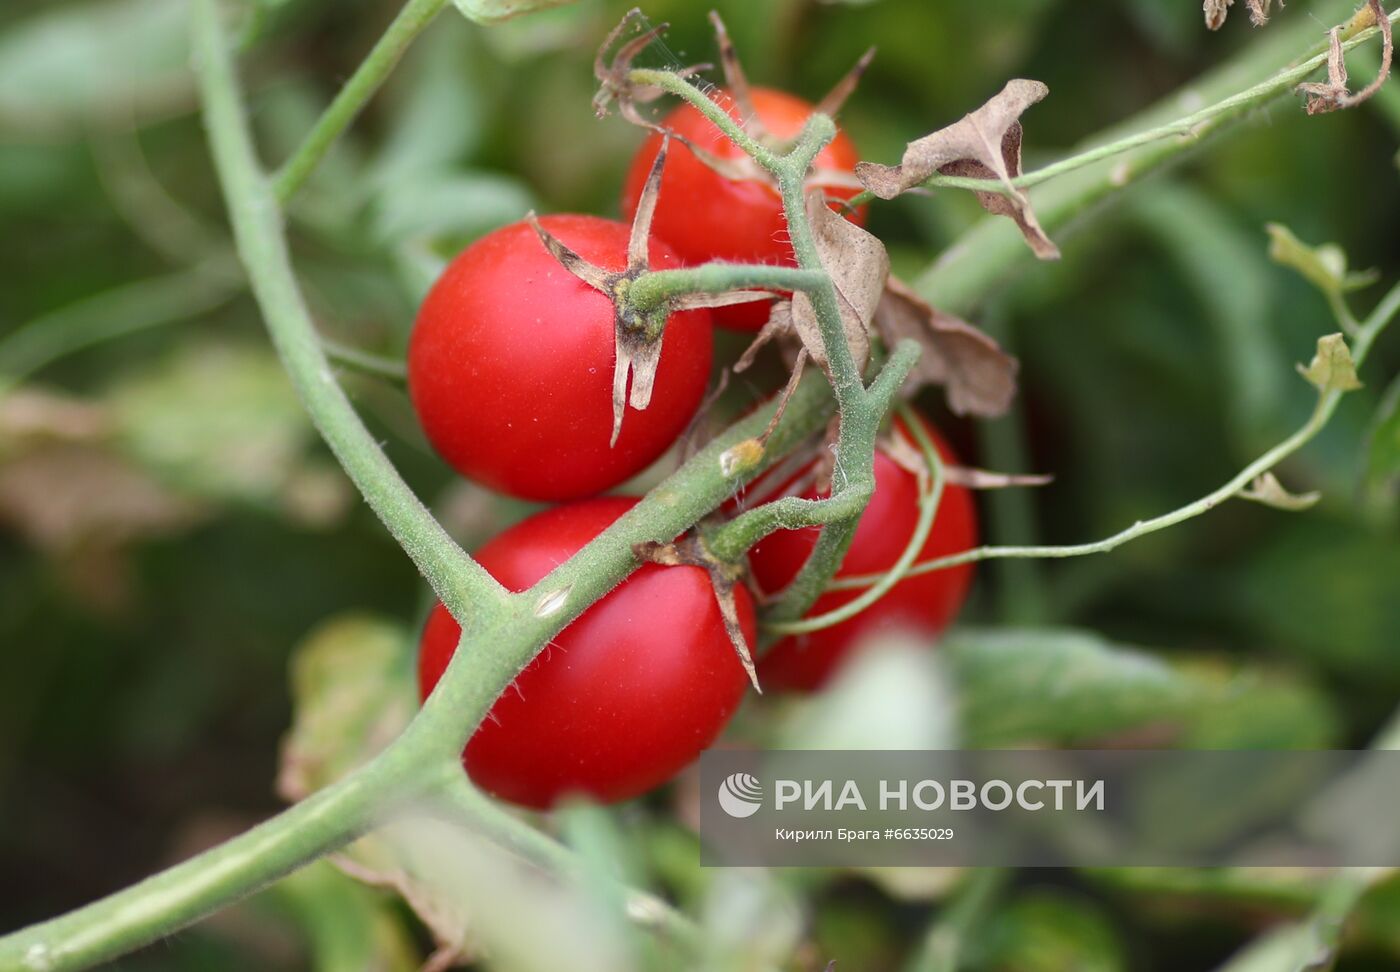 Сбор урожая овощей в Волгоградской области